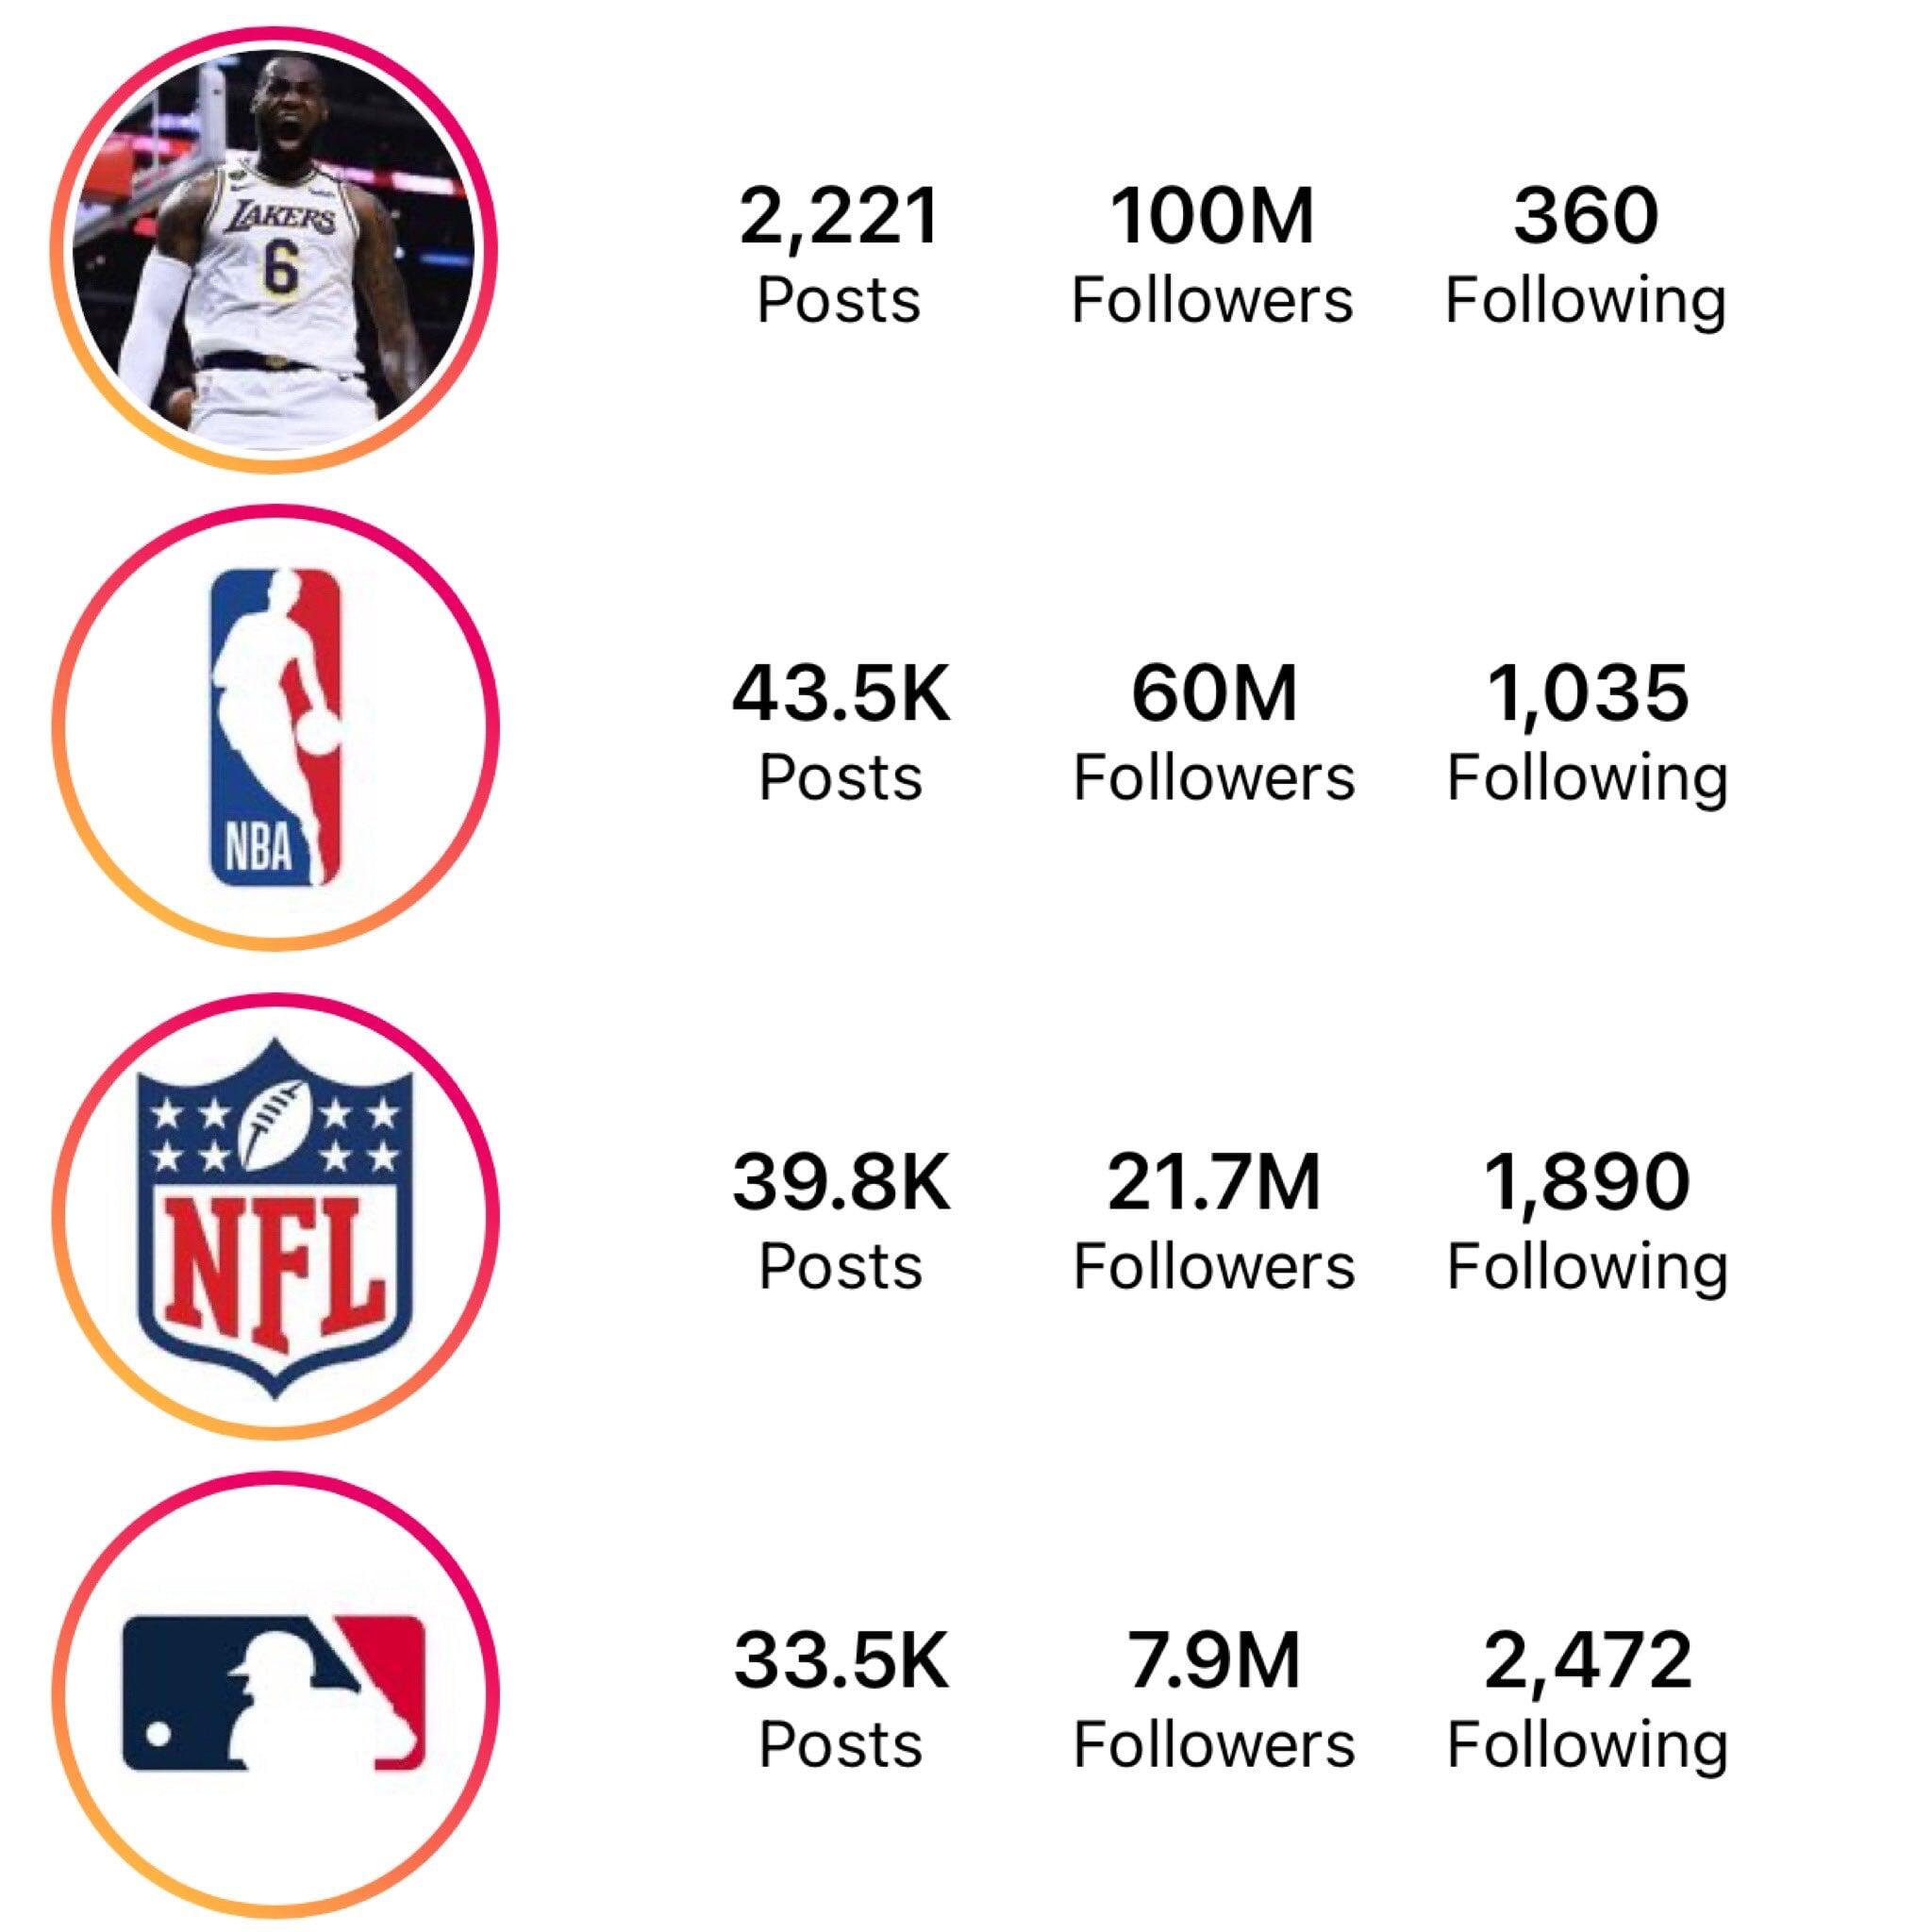 Леброн Джеймс набрал 100 миллионов подписчиков в Instagram – больше, чем у НБА, НФЛ, МЛБ и НХЛ вместе взятых